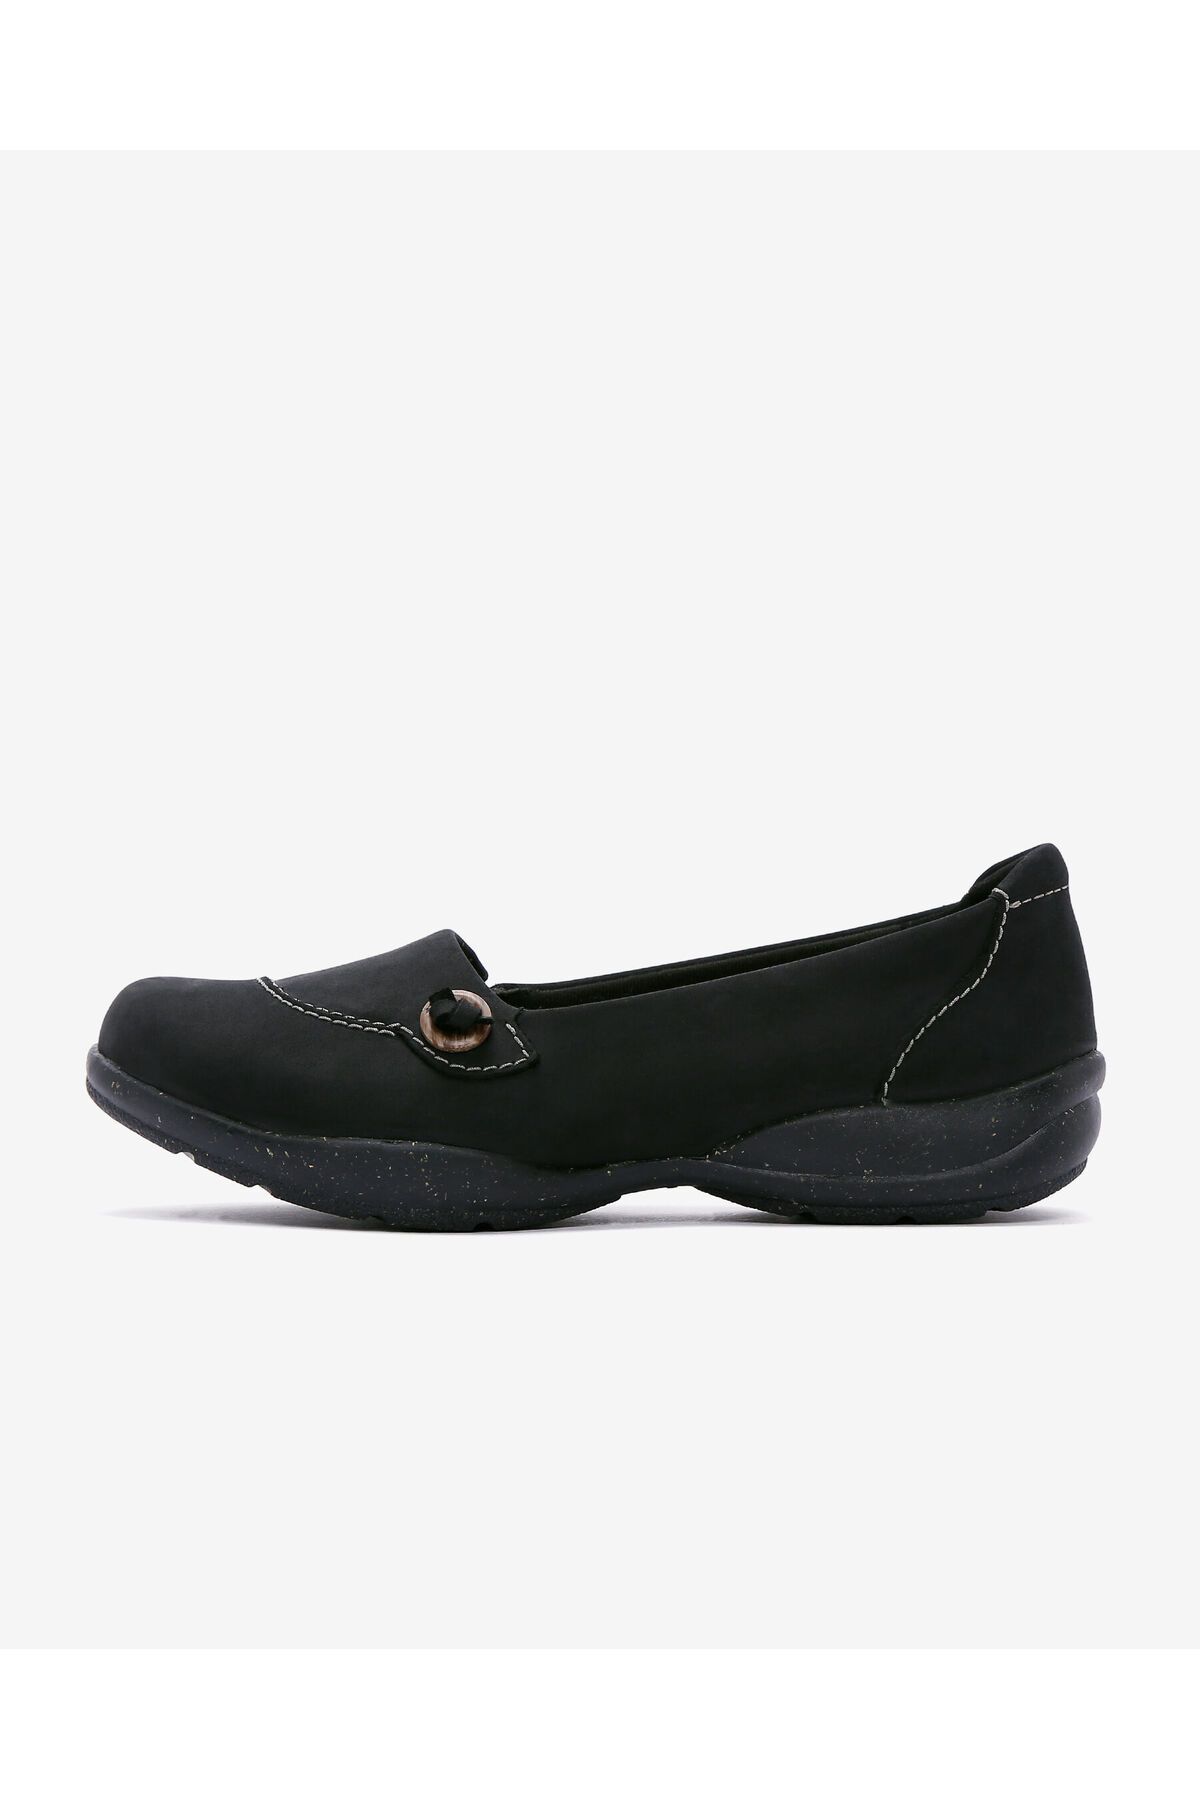 CLARKS Kadın Siyah Günlük Ayakkabı